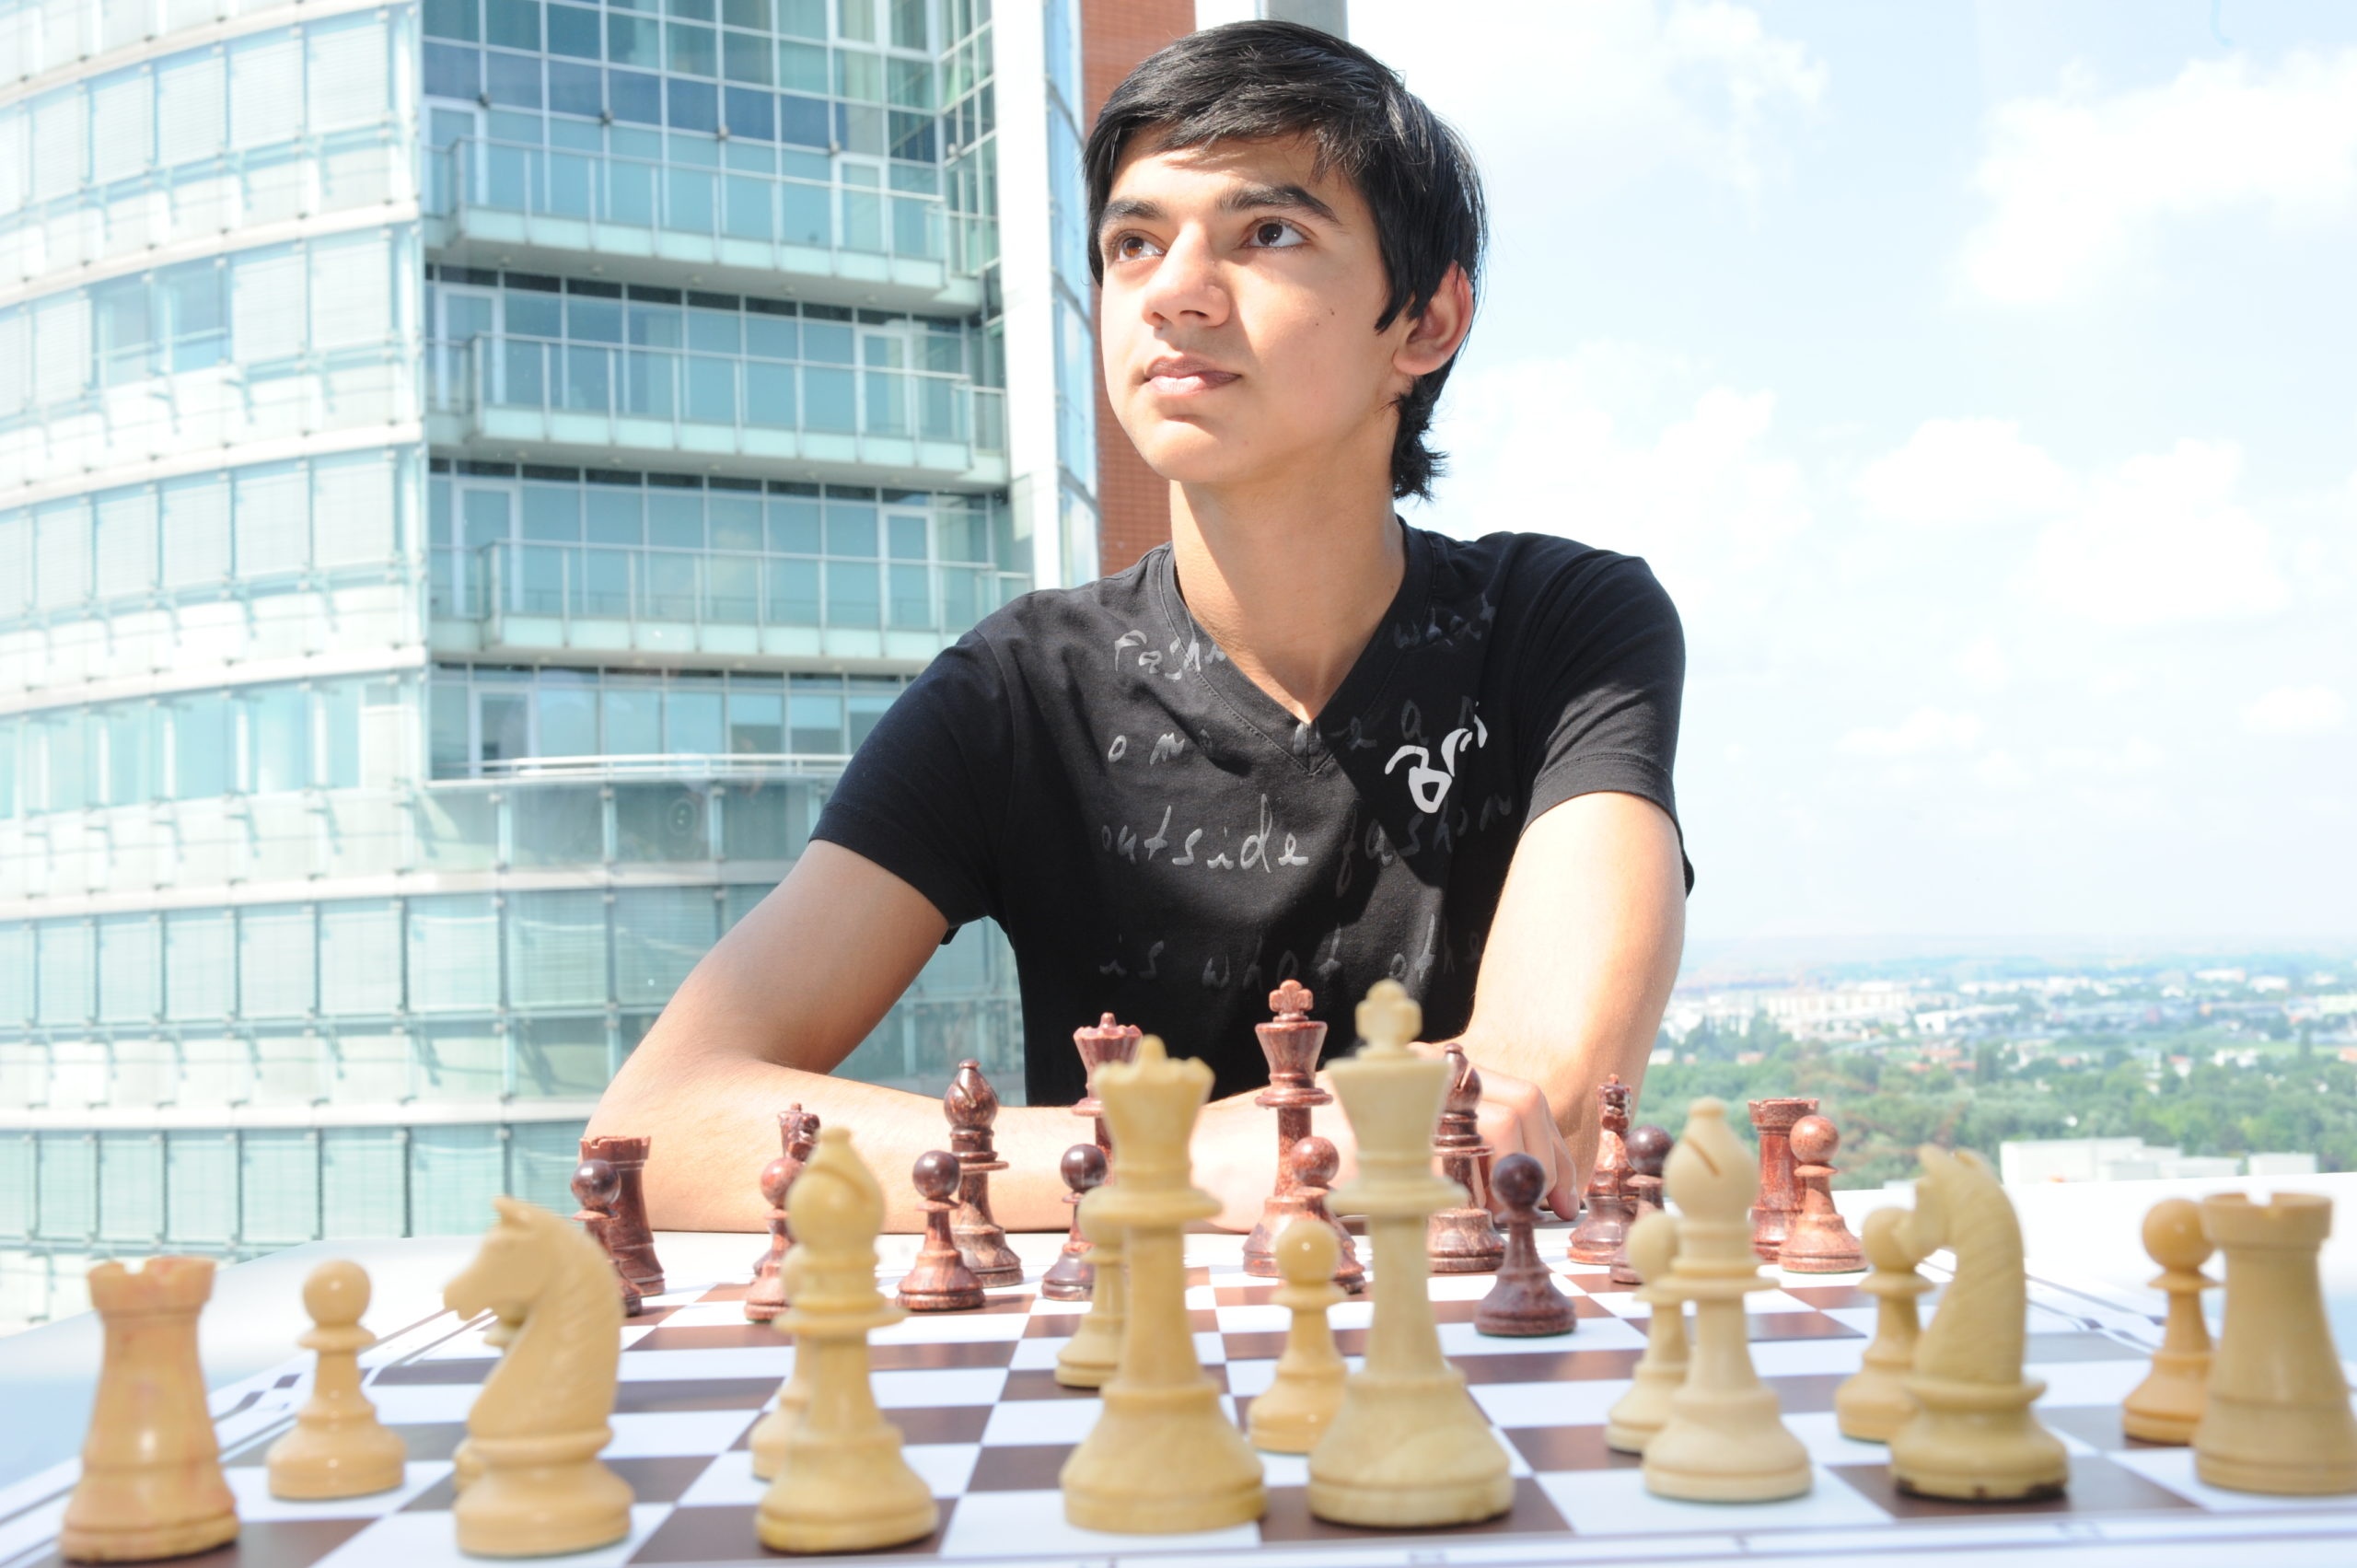 Родился в Петербурге, жил в Японии, а играть в шахматы стал за Нидерланды. История седьмого по силе шахматиста мира